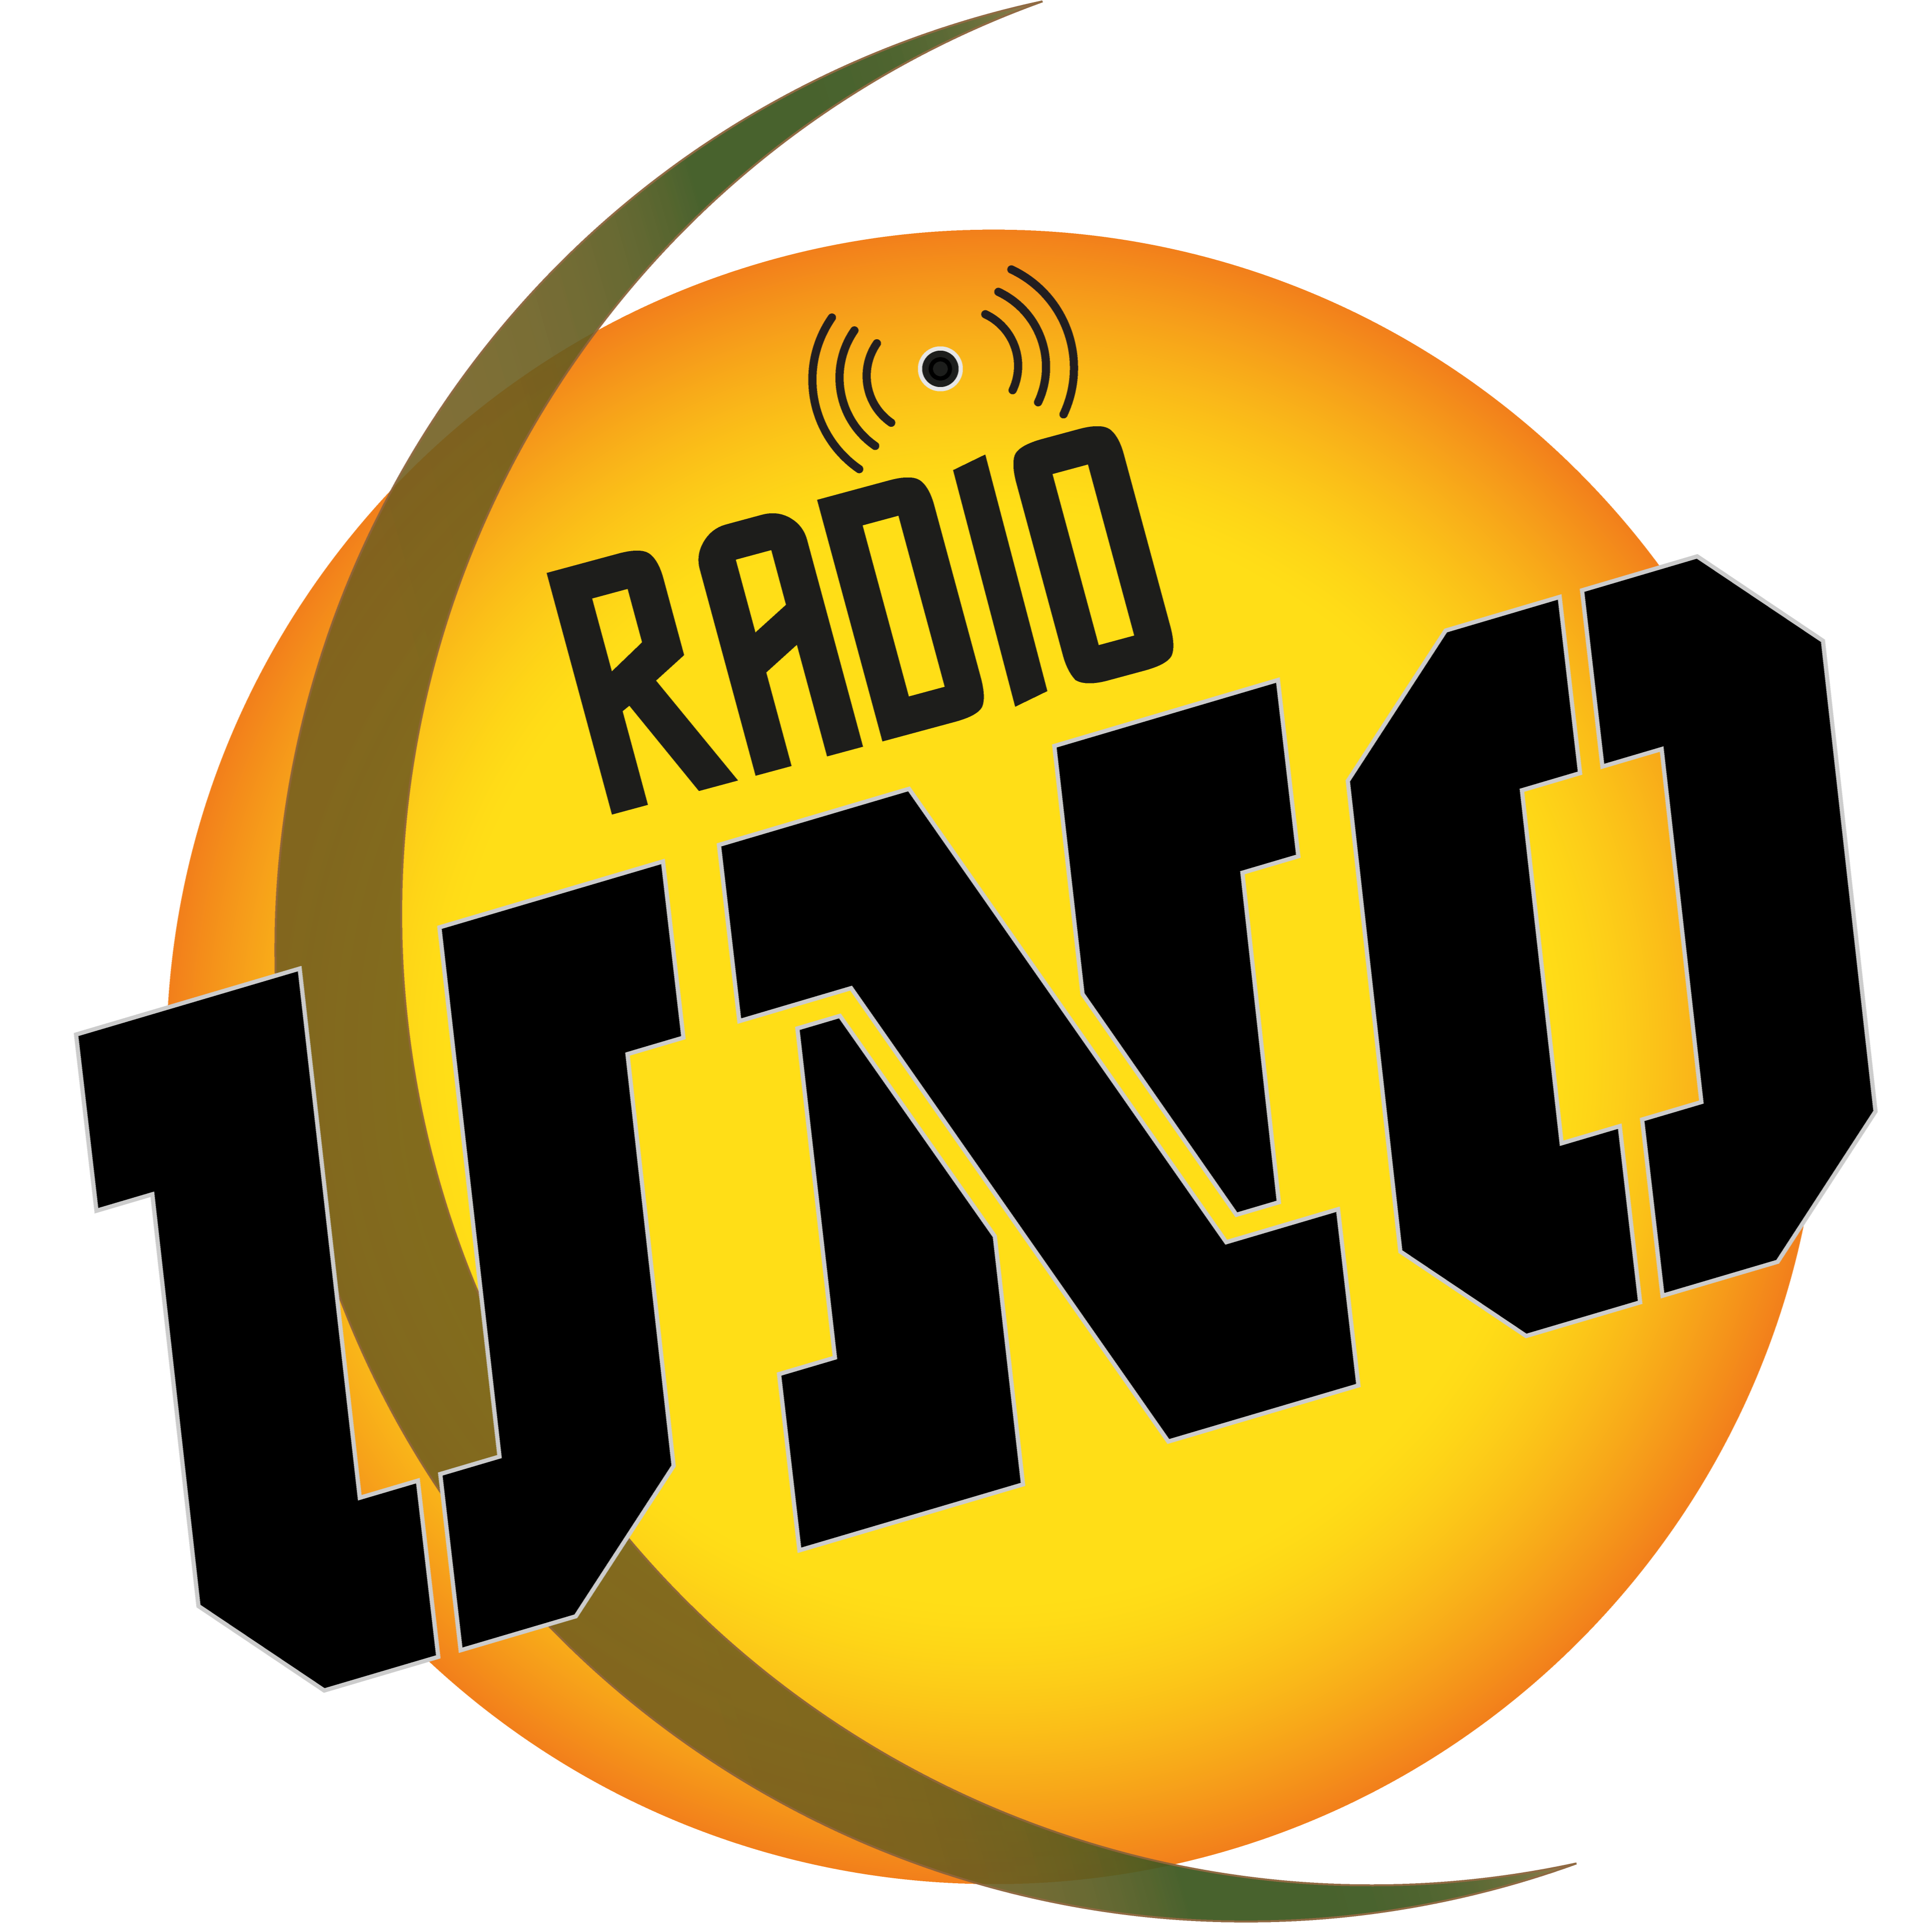 Radio Uno El Salvador